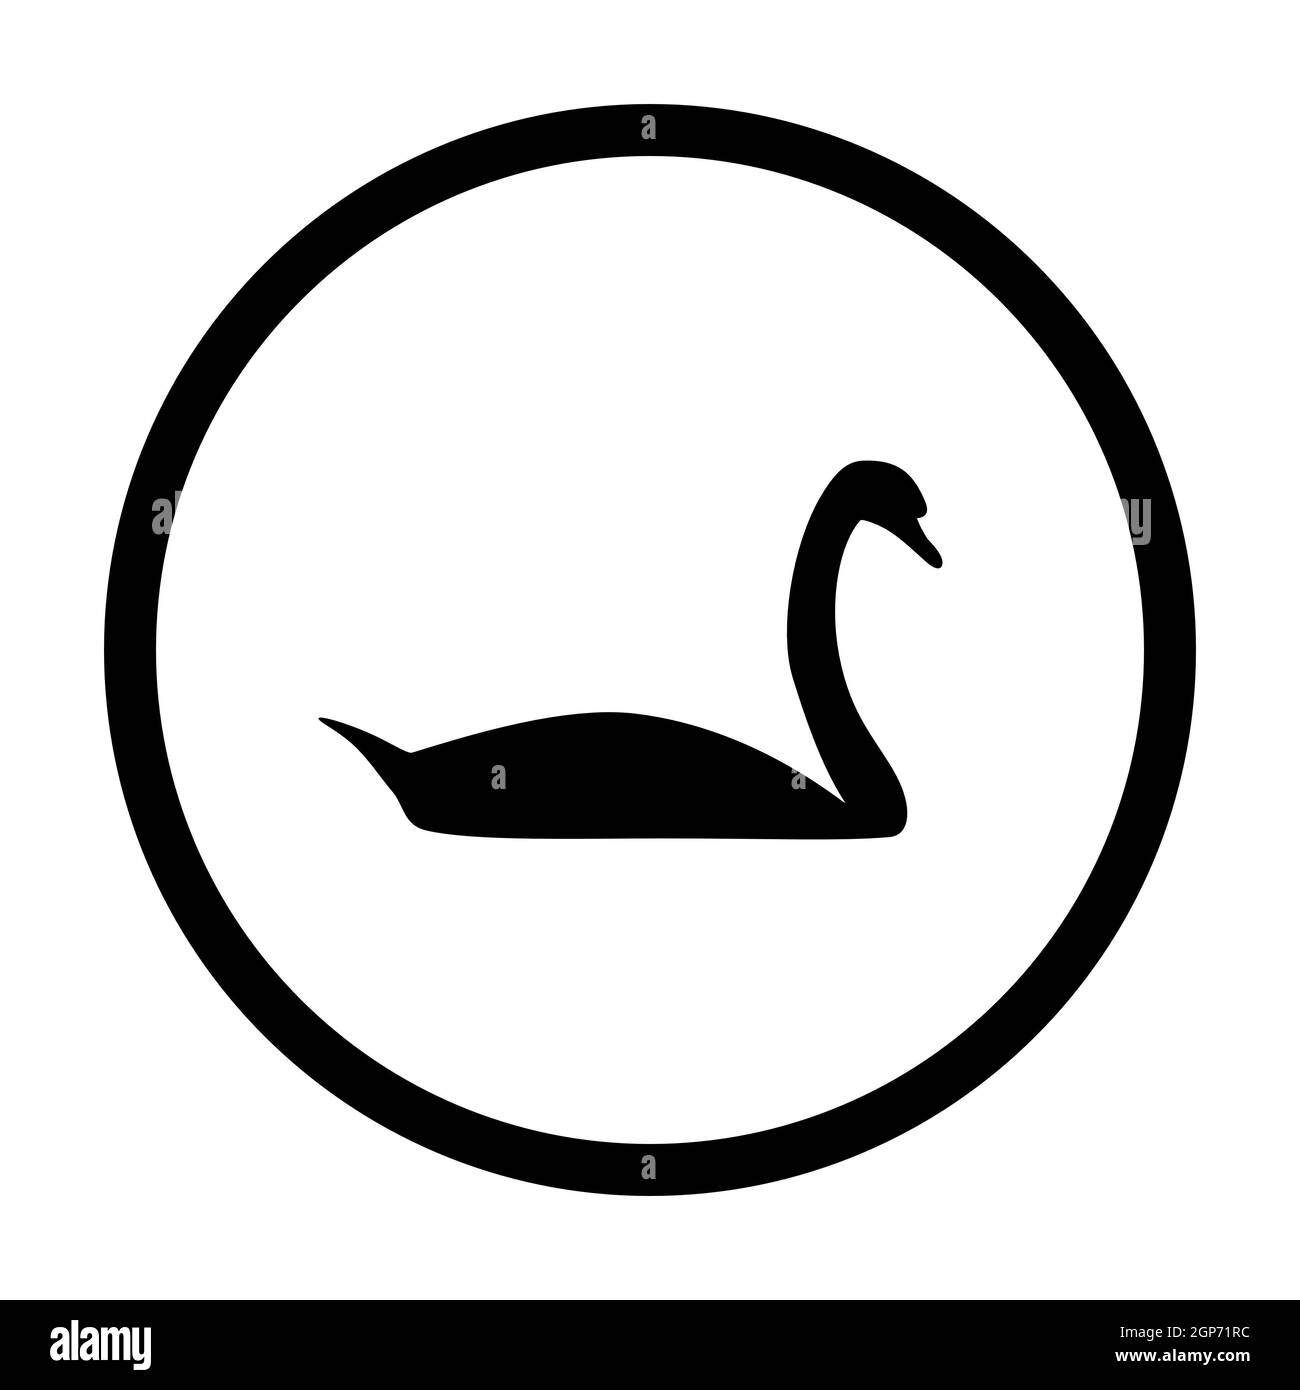 Swan and circle Stock Photo